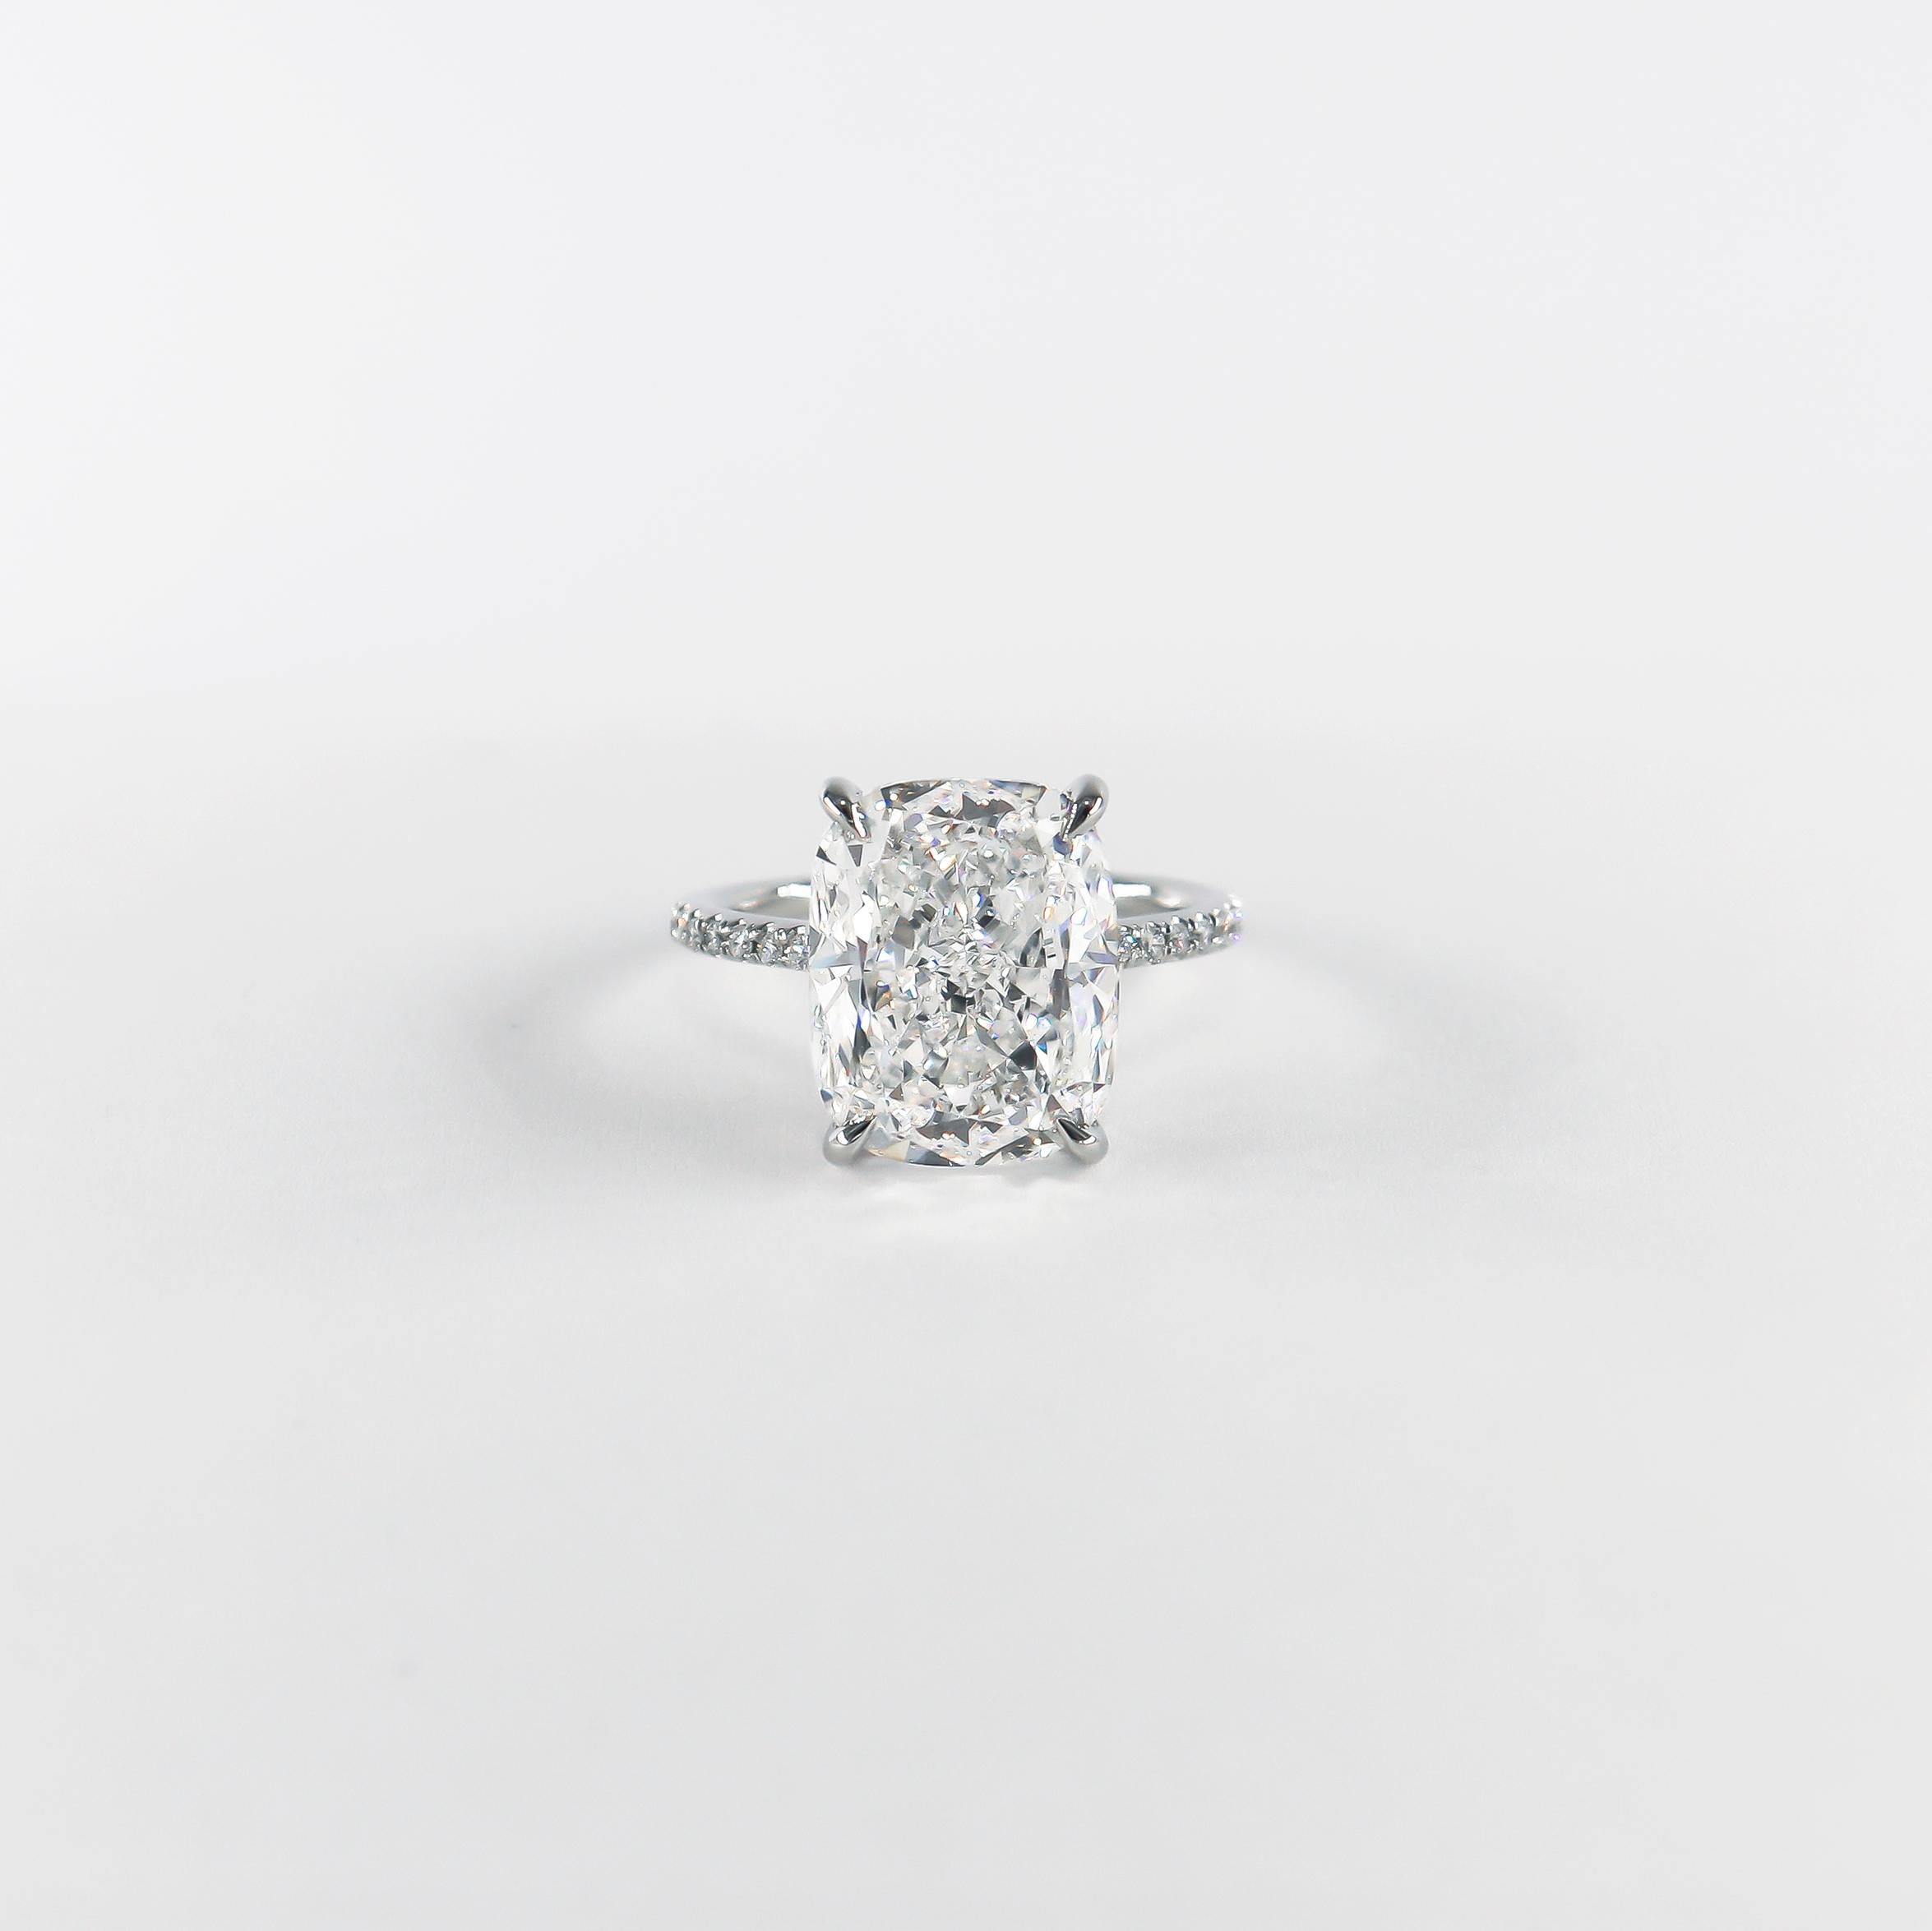 Frisch aus der Werkstatt von J. Birnbach, ist dieser unglaublich wichtige Ring mit einem GIA-zertifizierten 8,02 Karat kissenförmig modifizierten Diamanten im Brillantschliff der Farbe D und der Reinheit SI1 besetzt, wie im GIA-Grading-Bericht